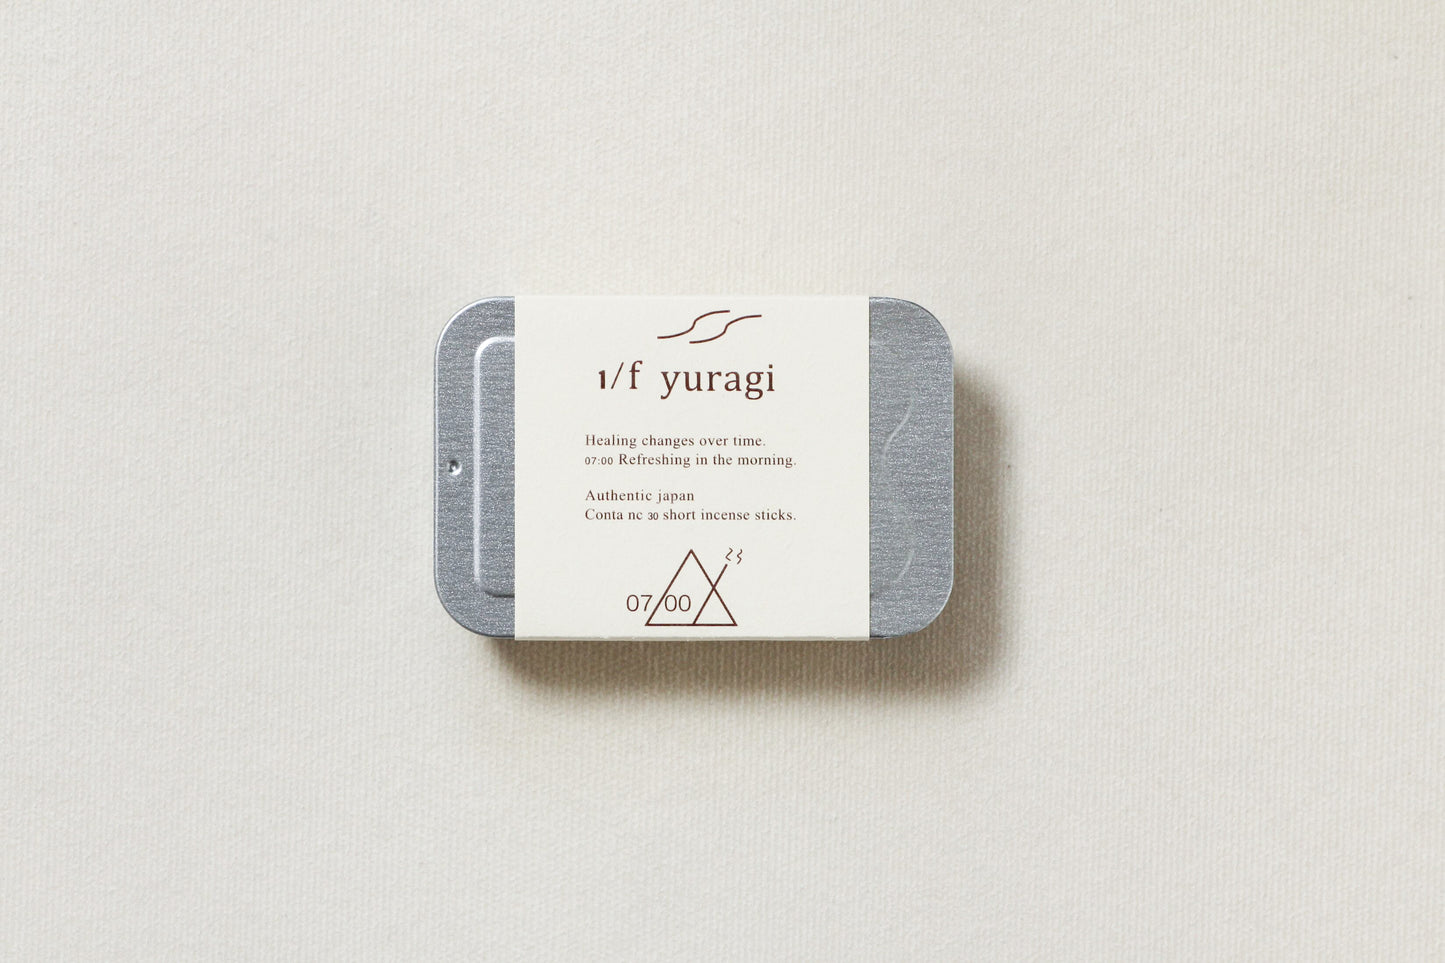 お香 １／ｆ YURAGI Incense by Nez reflet